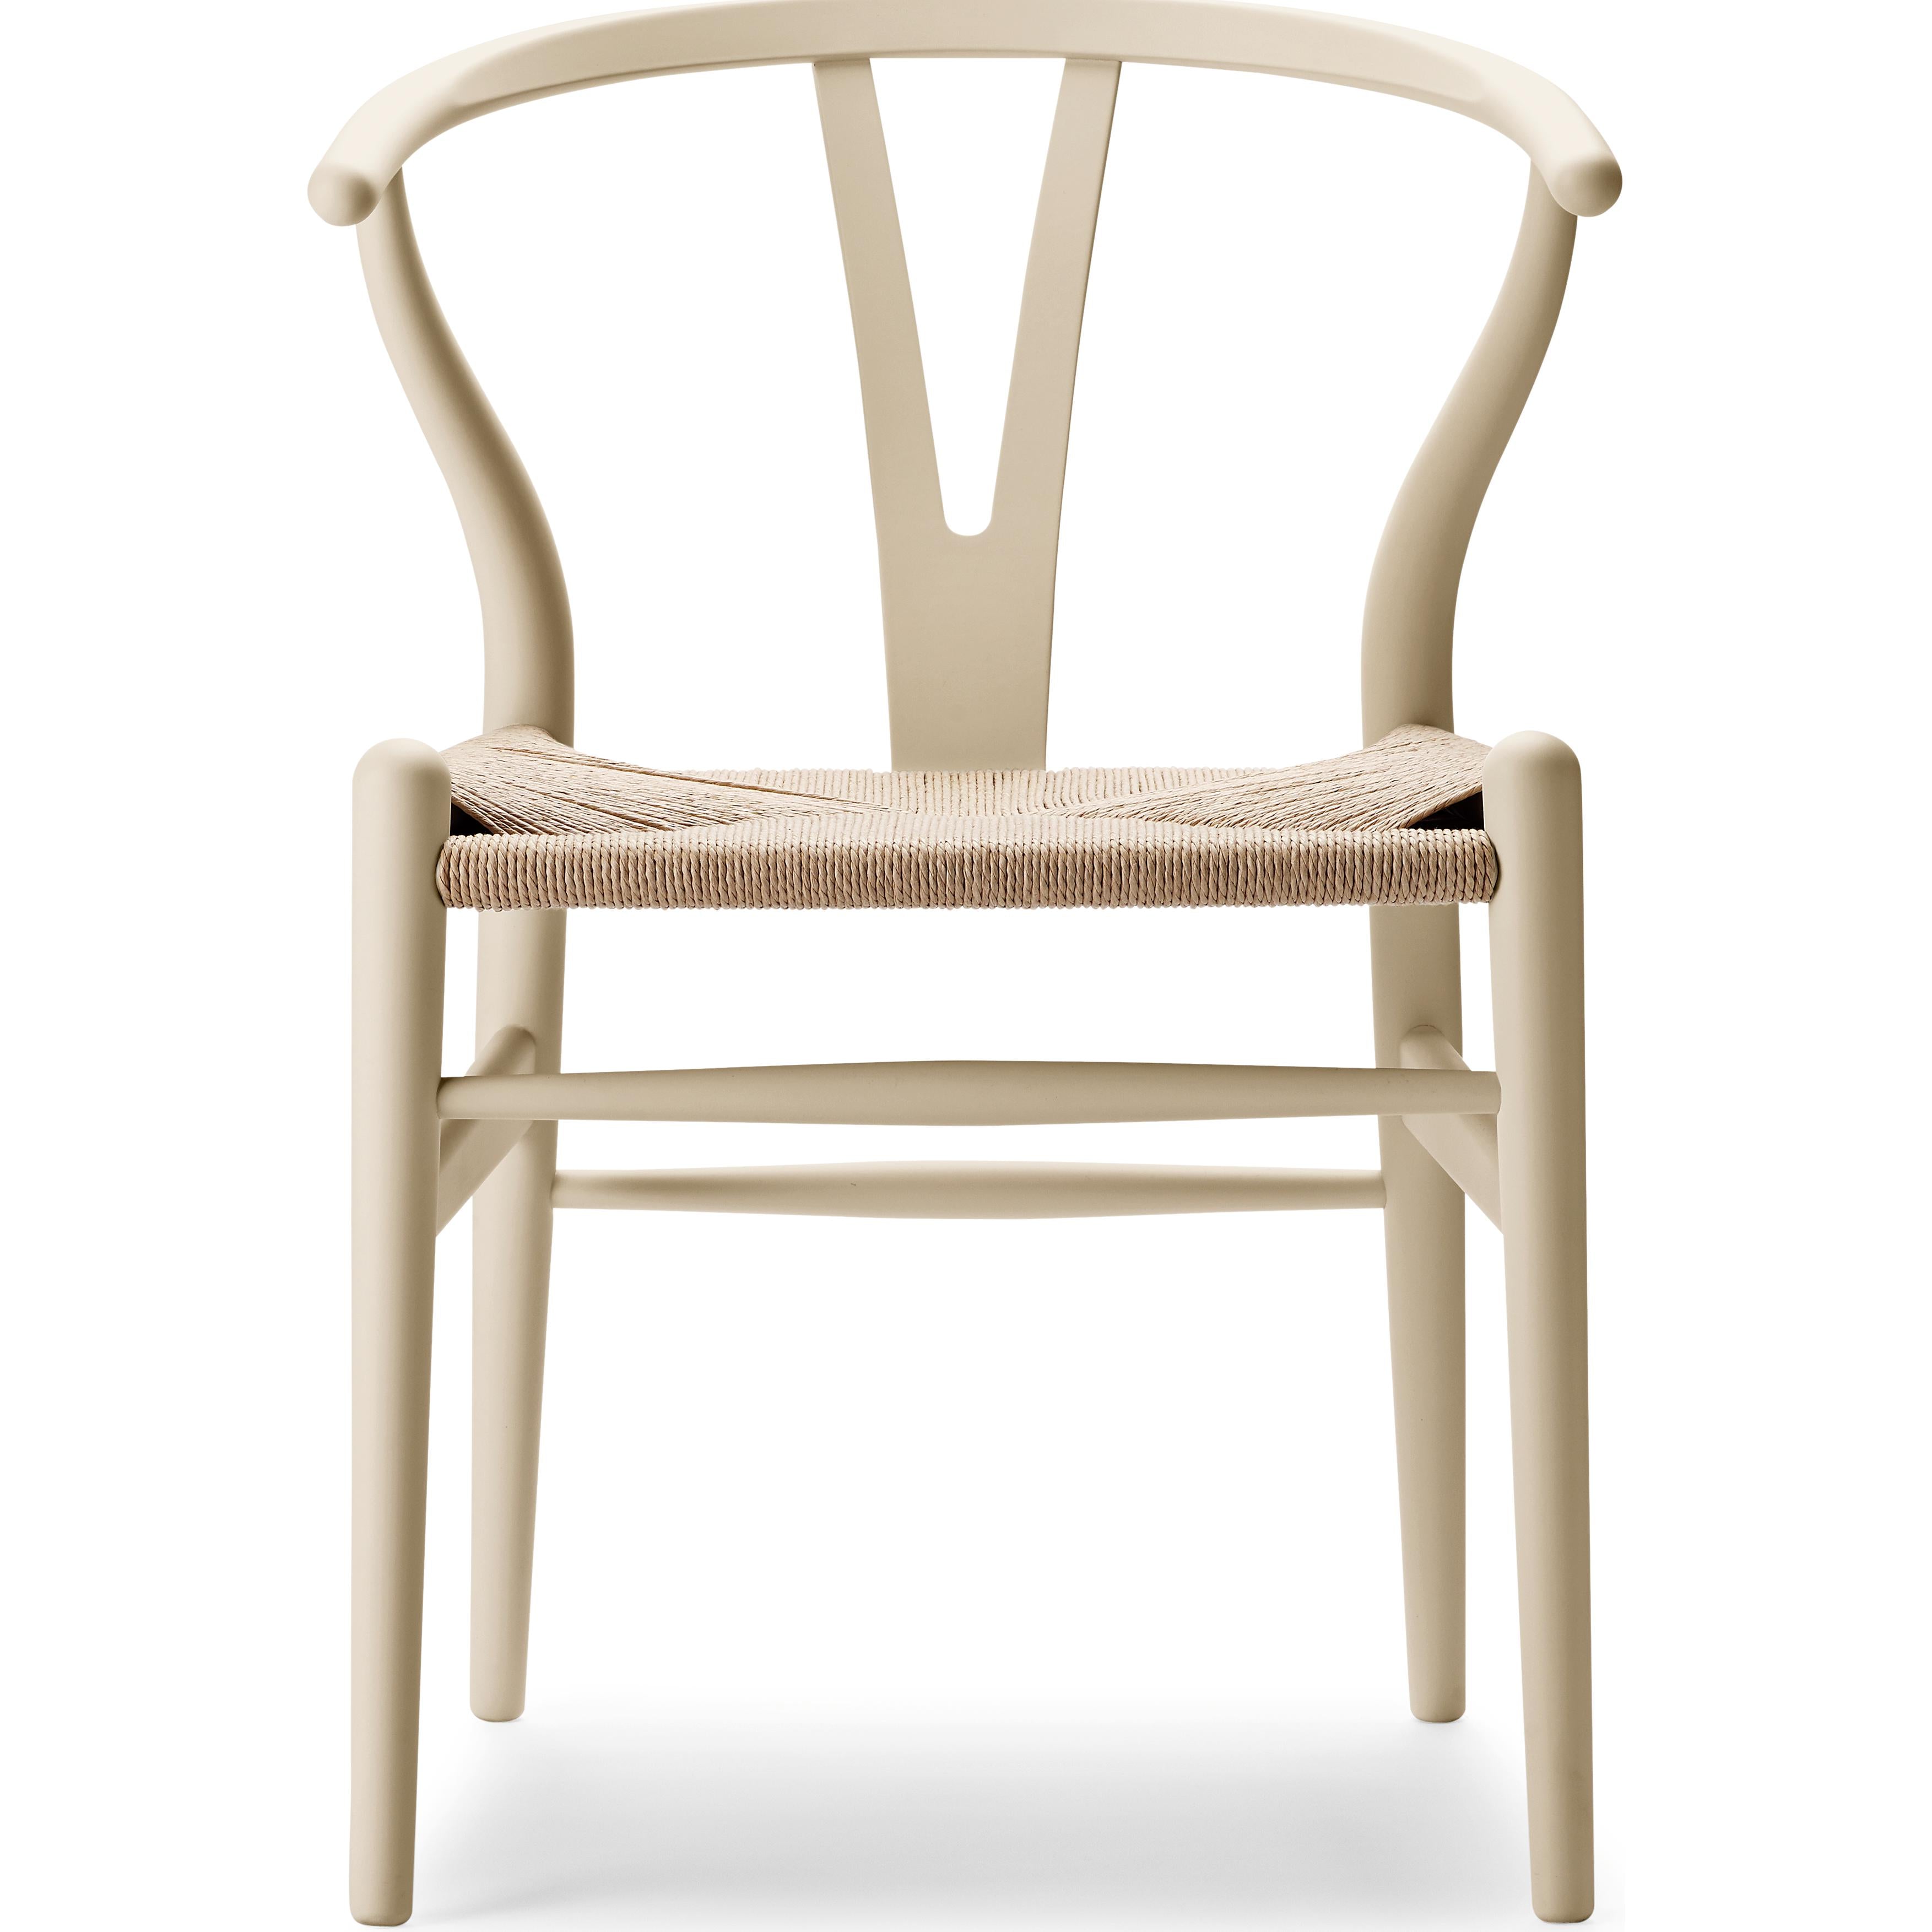 Carl Hansen CH24 Soft Y -Chair Beech, Barley - Special Edition